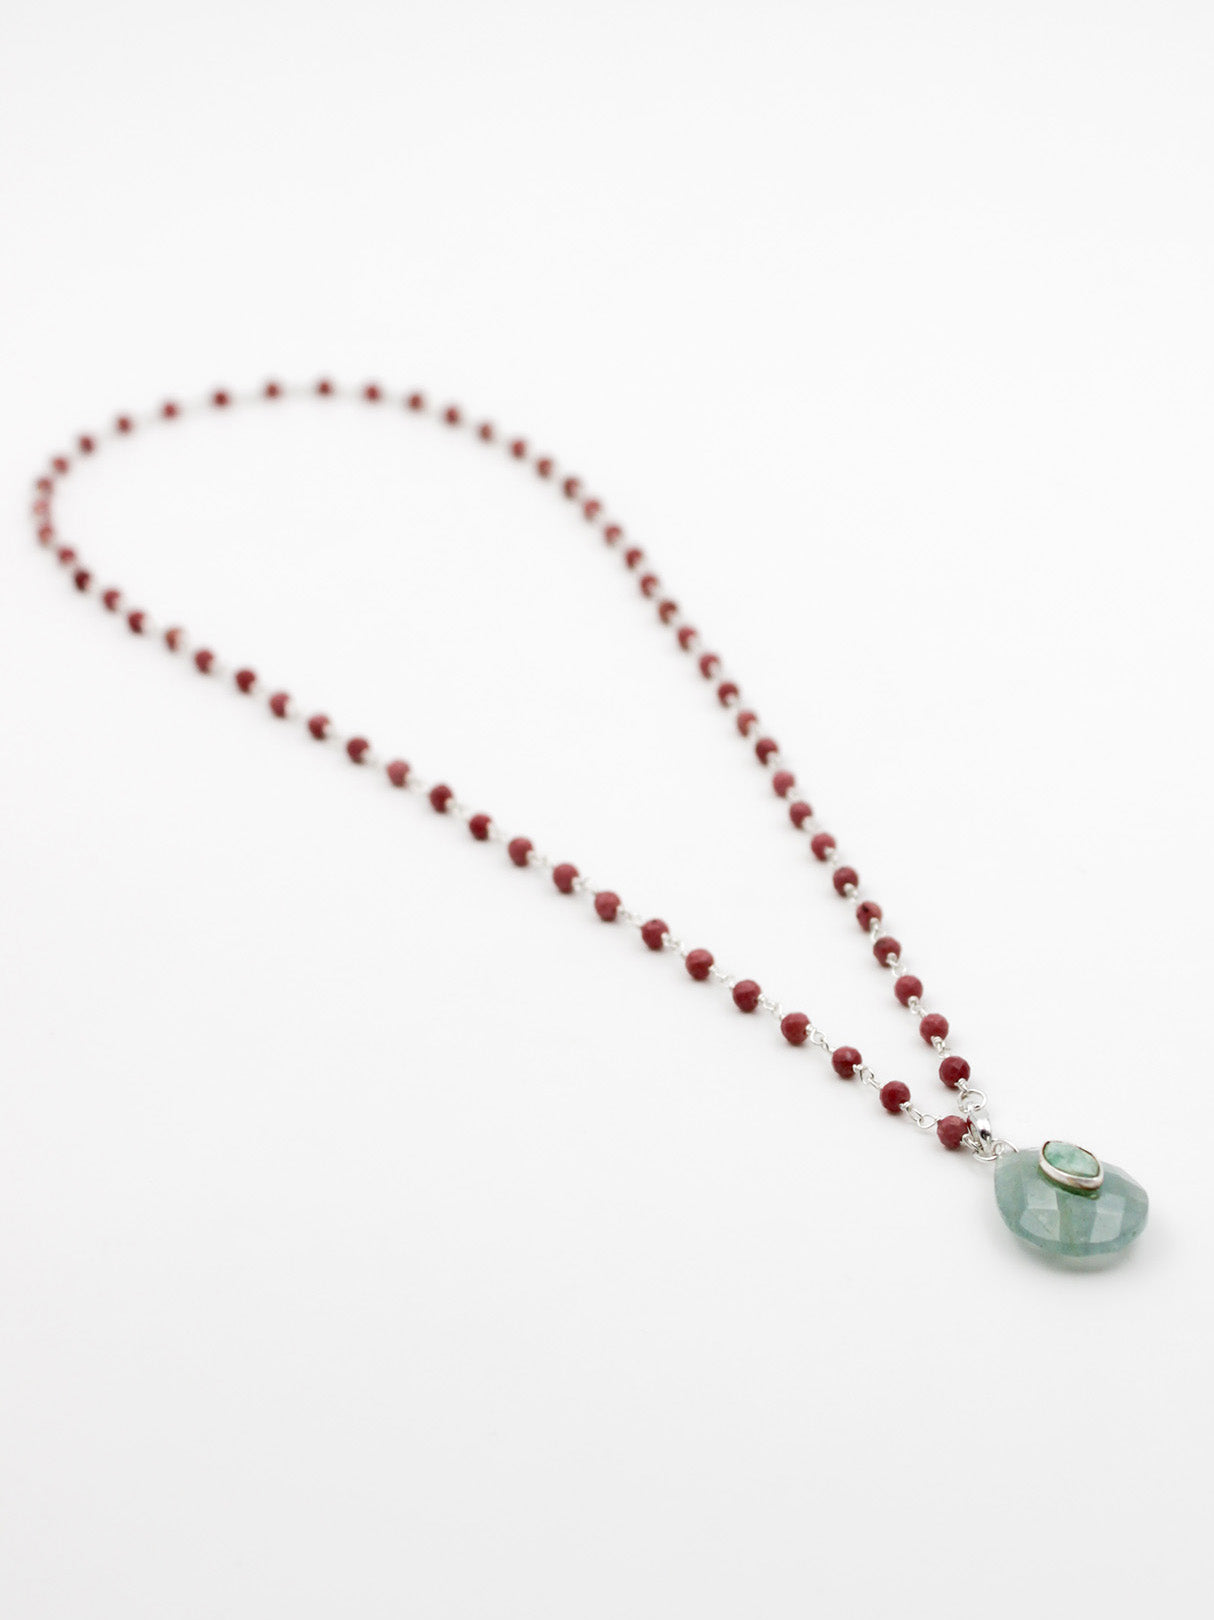 Collier perles et goutte - gamme LOUISE - argent 925 - pierres naturelles : rhodonite, aigue marine, amazonite - nouvelle collection 23FW - l’Atelier des Dames